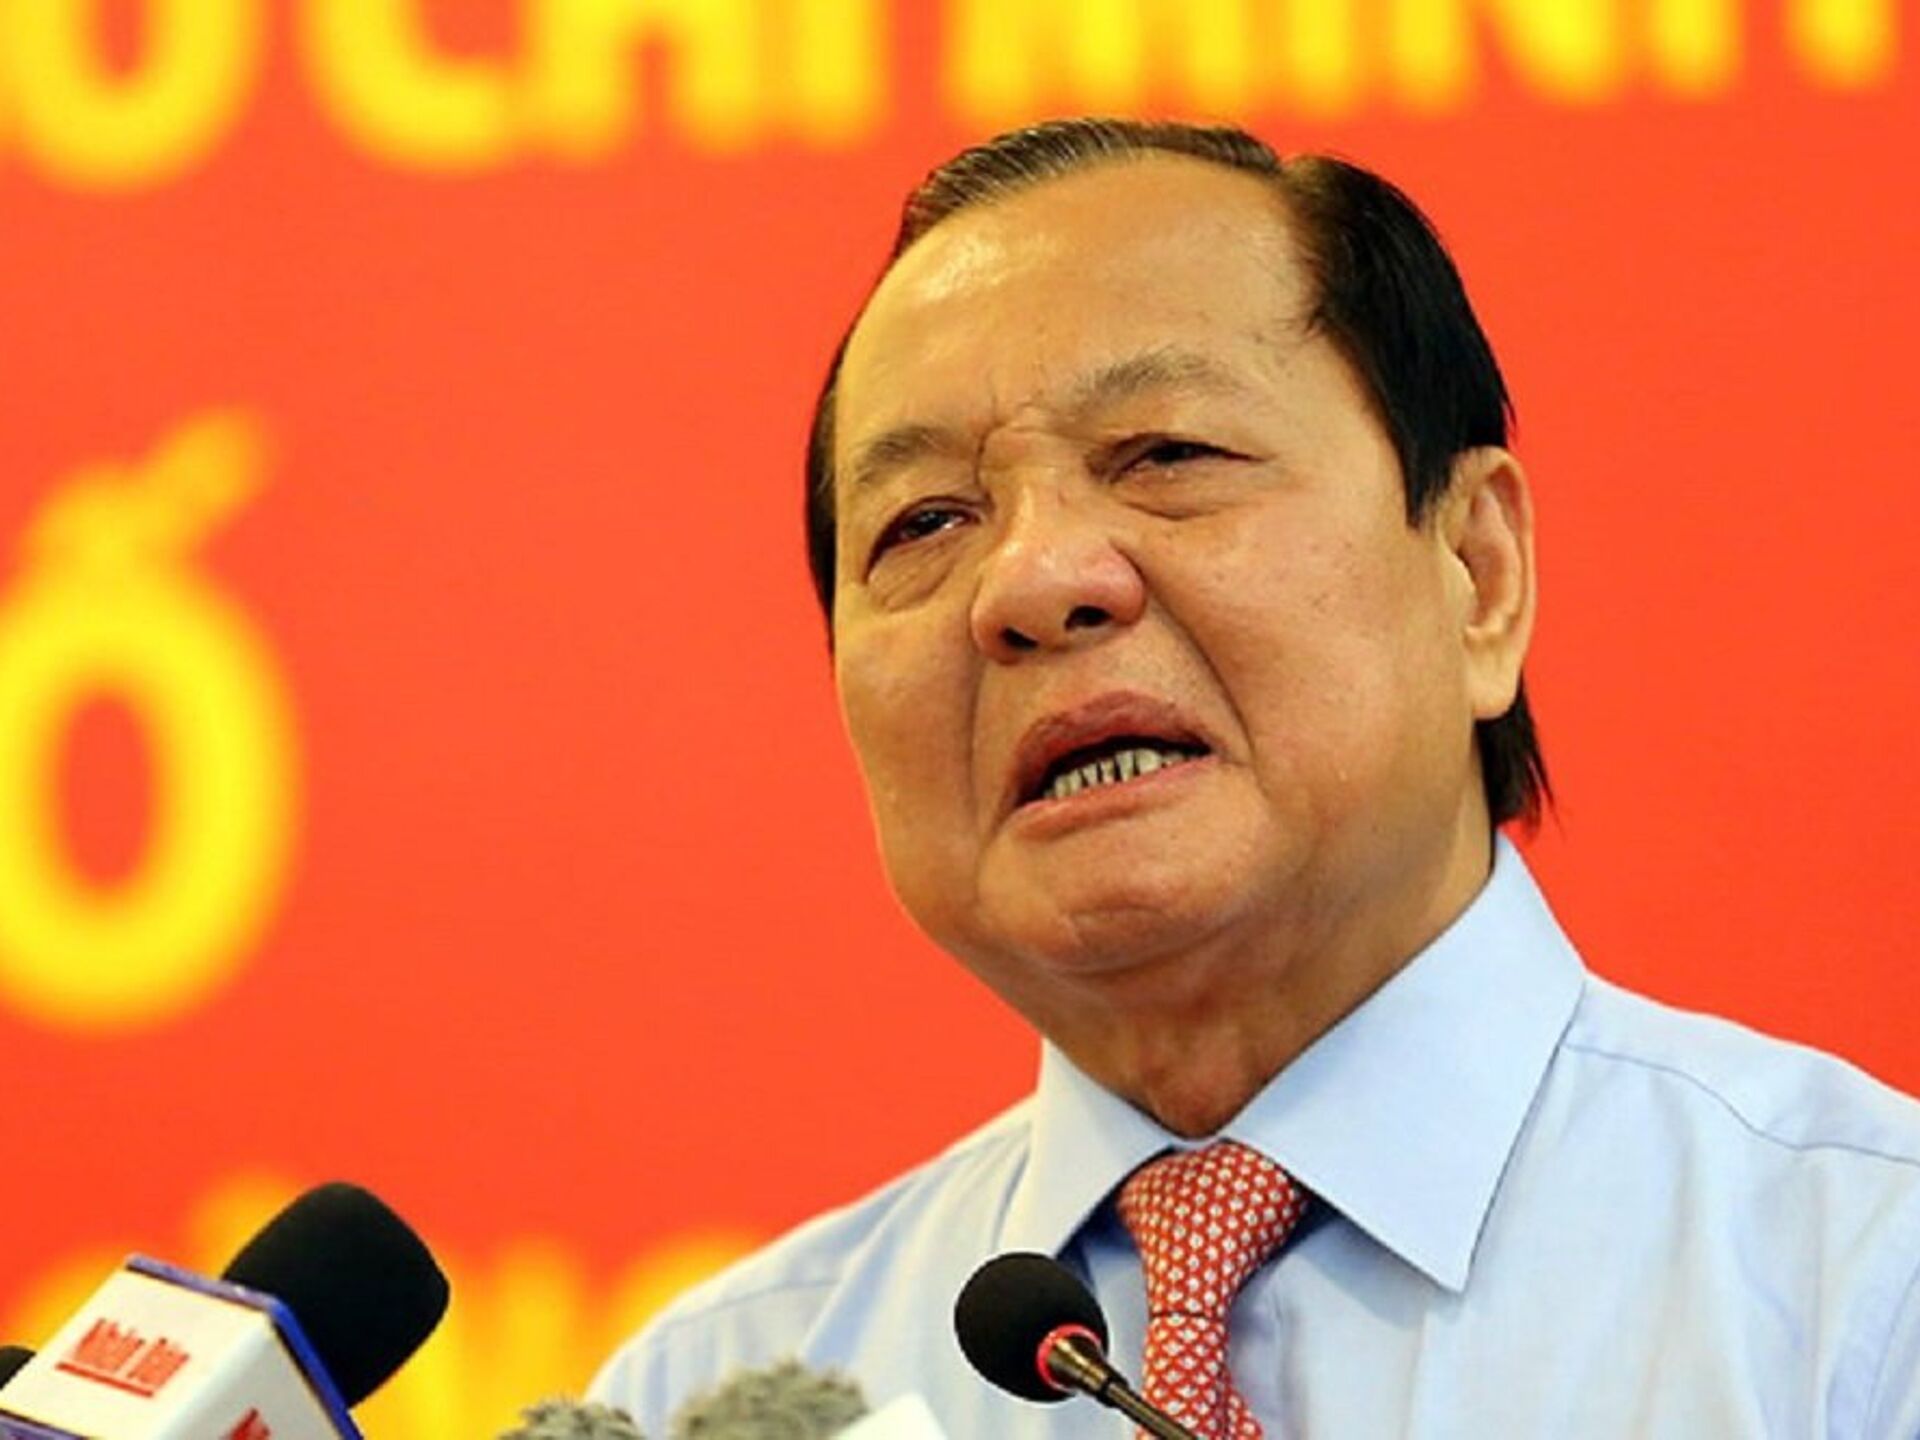 Nguyên Ủy viên Bộ Chính trị Lê Thanh Hải bị cách hết chức vụ trong Đảng- Ảnh 1.